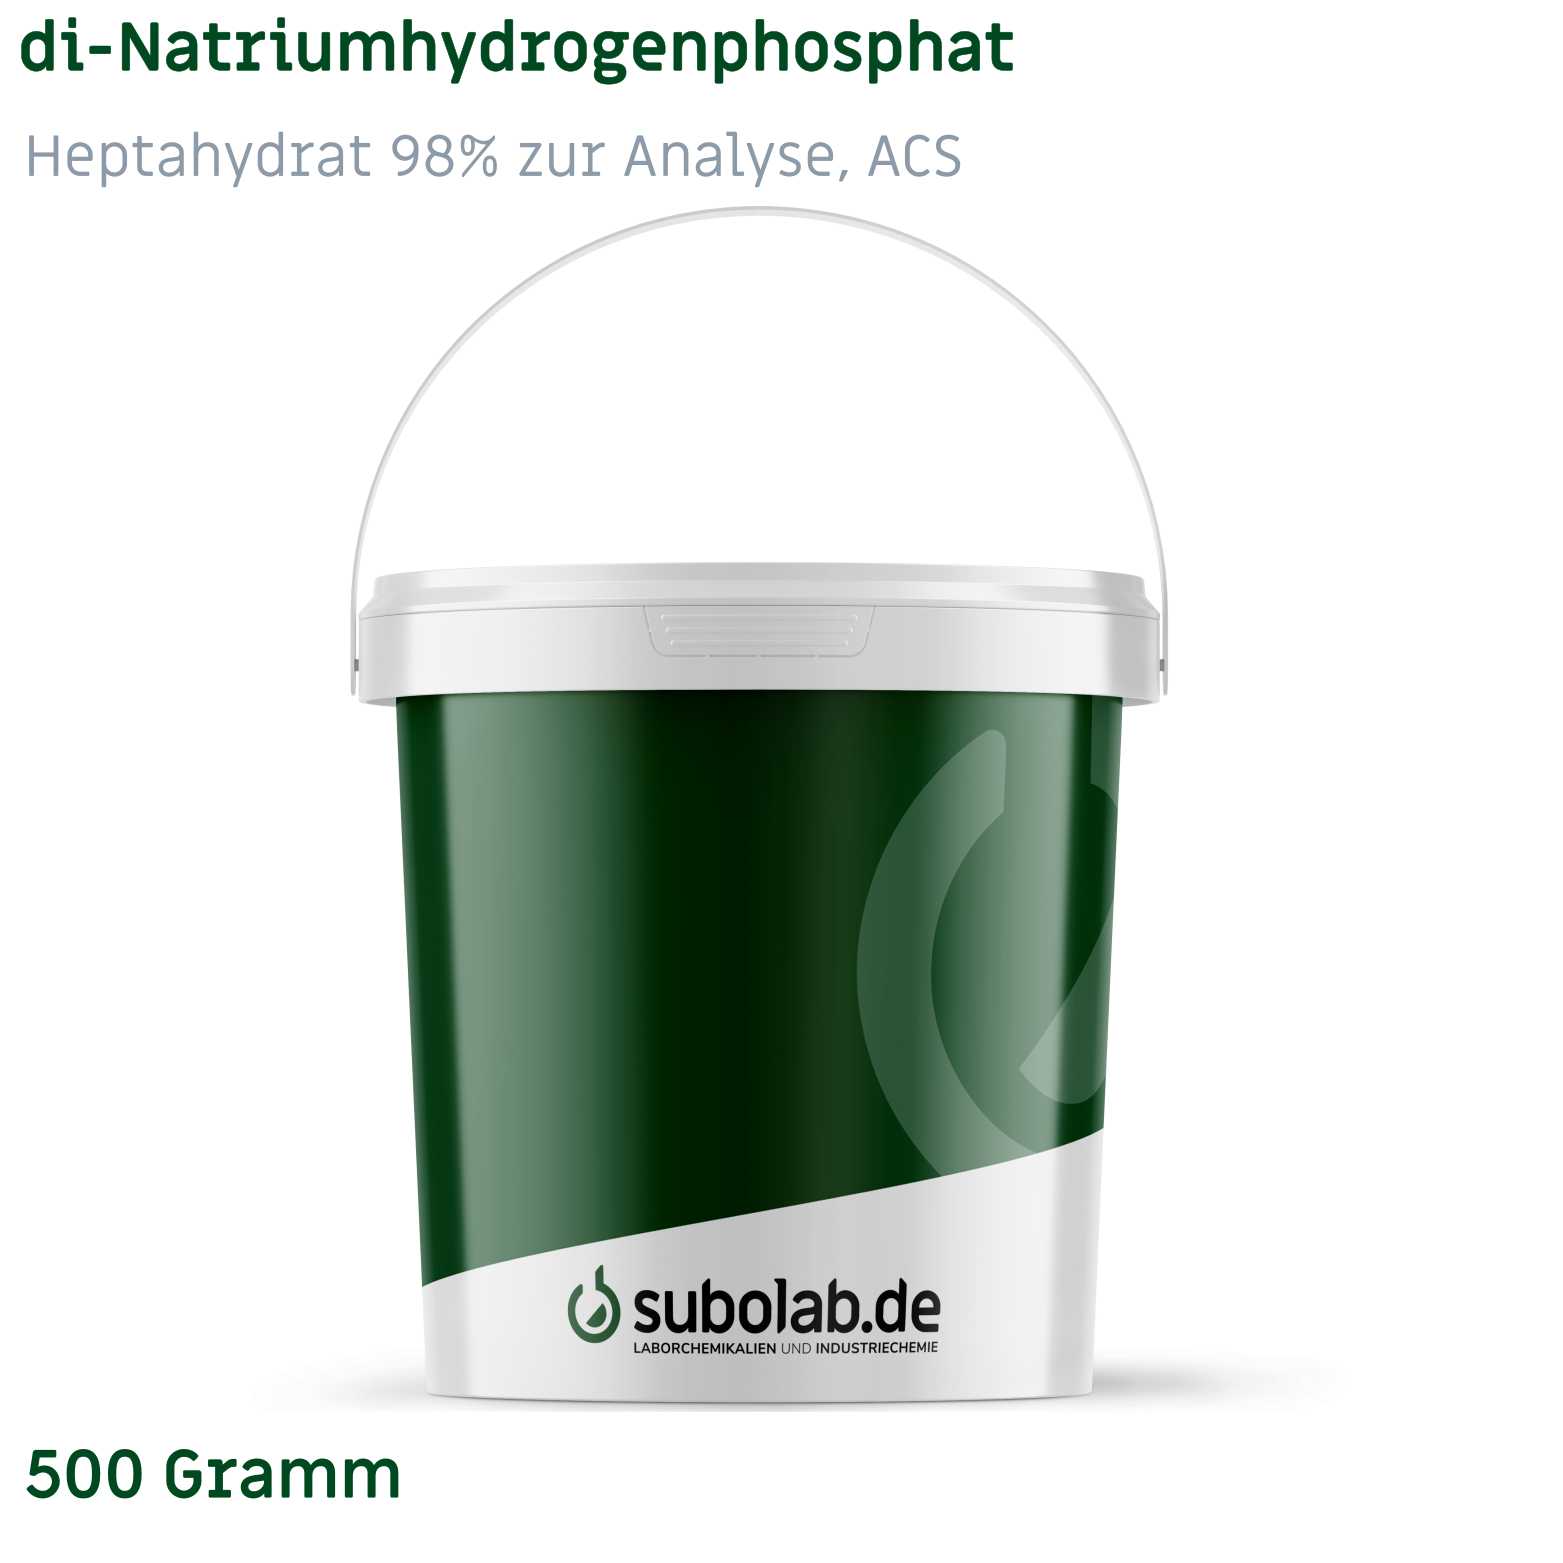 Bild von di-Natriumhydrogenphosphat - Heptahydrat 98% zur Analyse, ACS (500 Gramm)